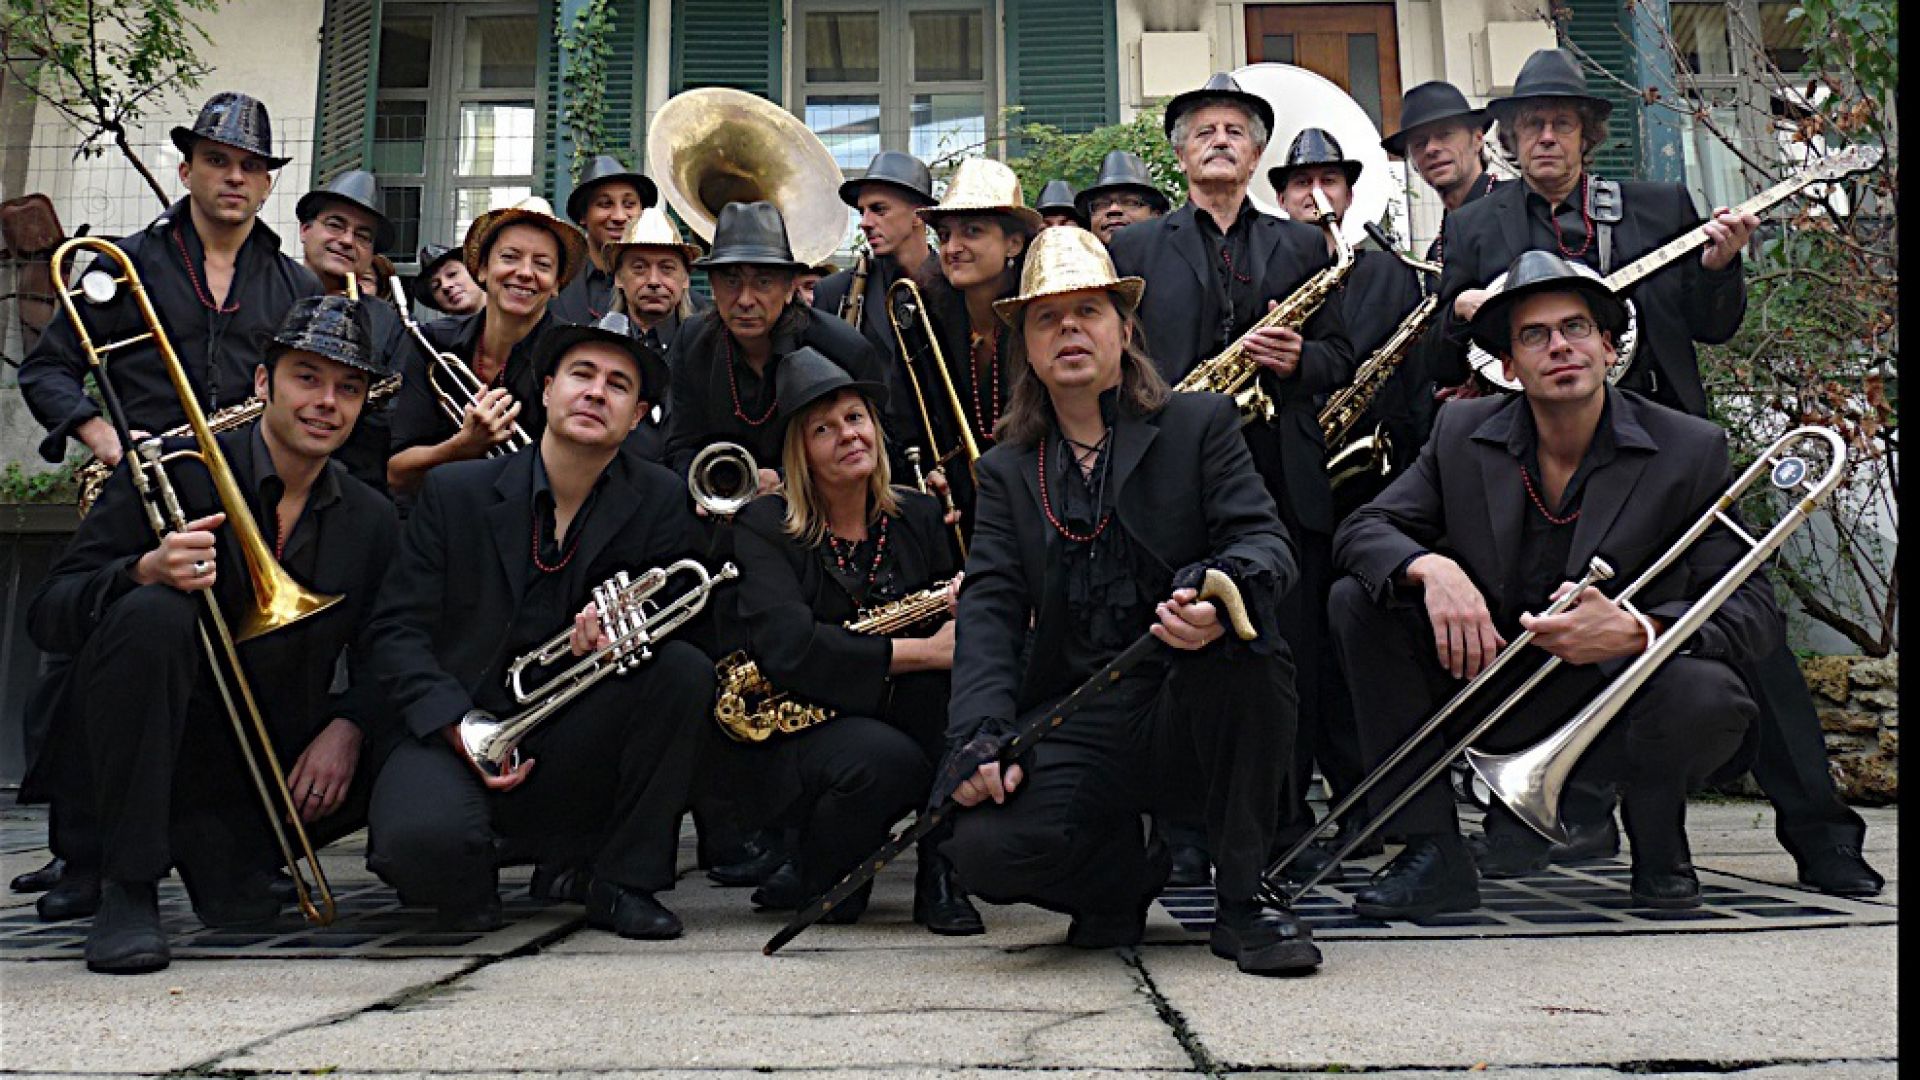 Mardi Brass Band